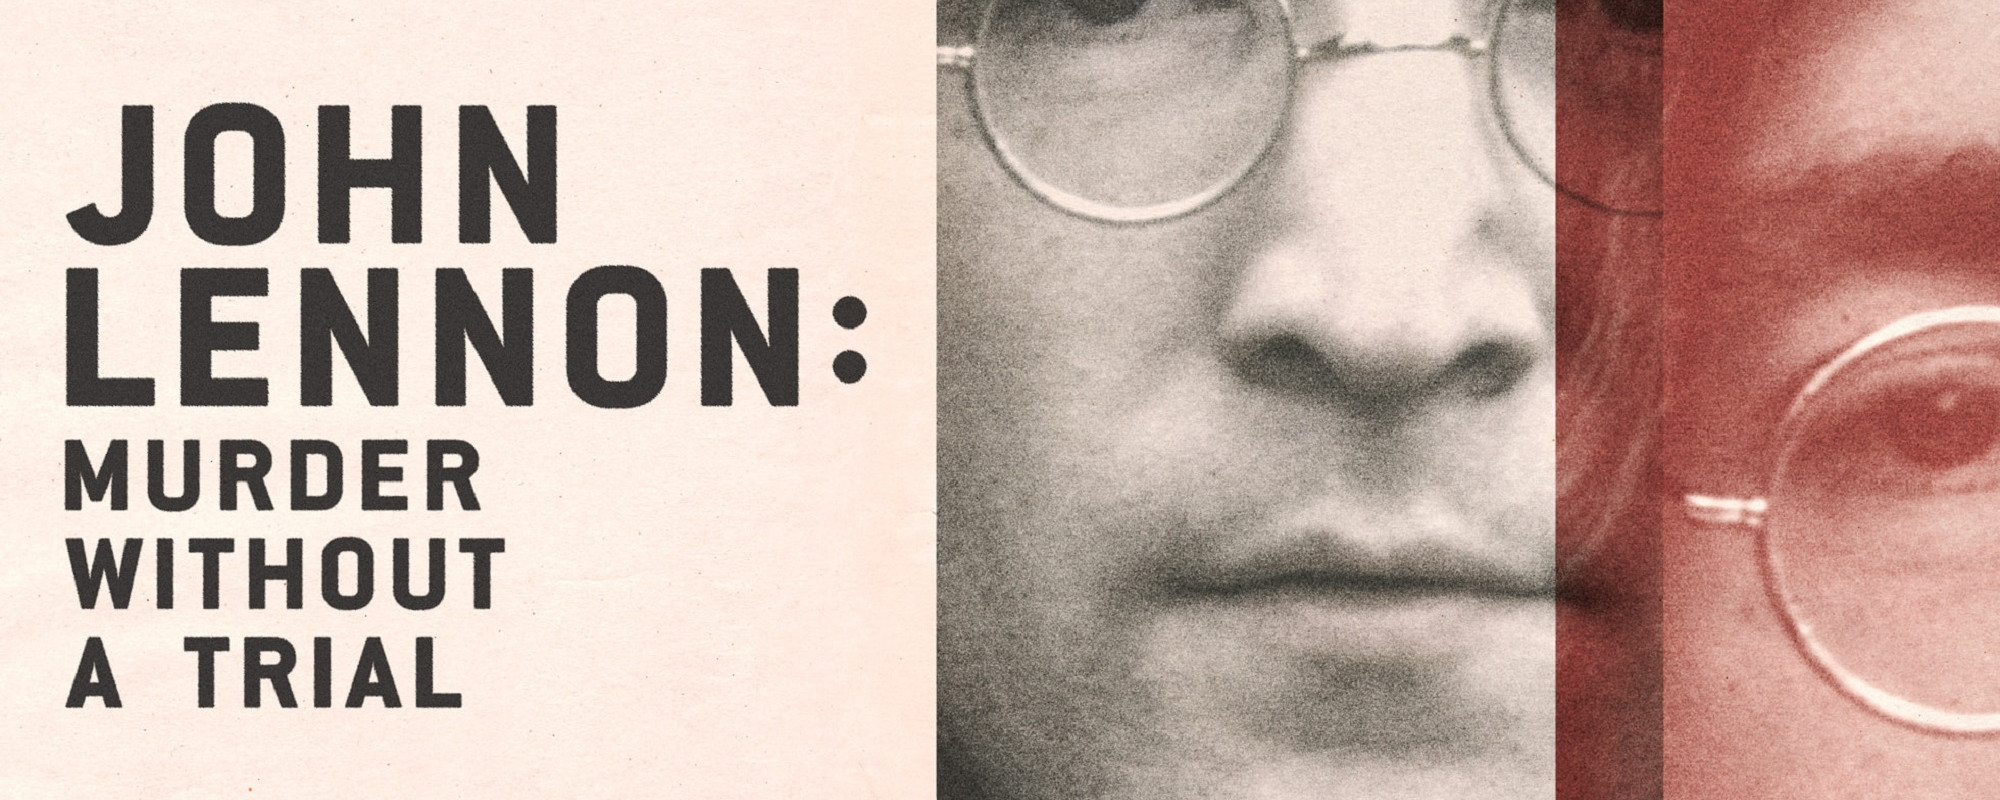 John Lennon’s Tragic Last Words Revealed in New Docuseries